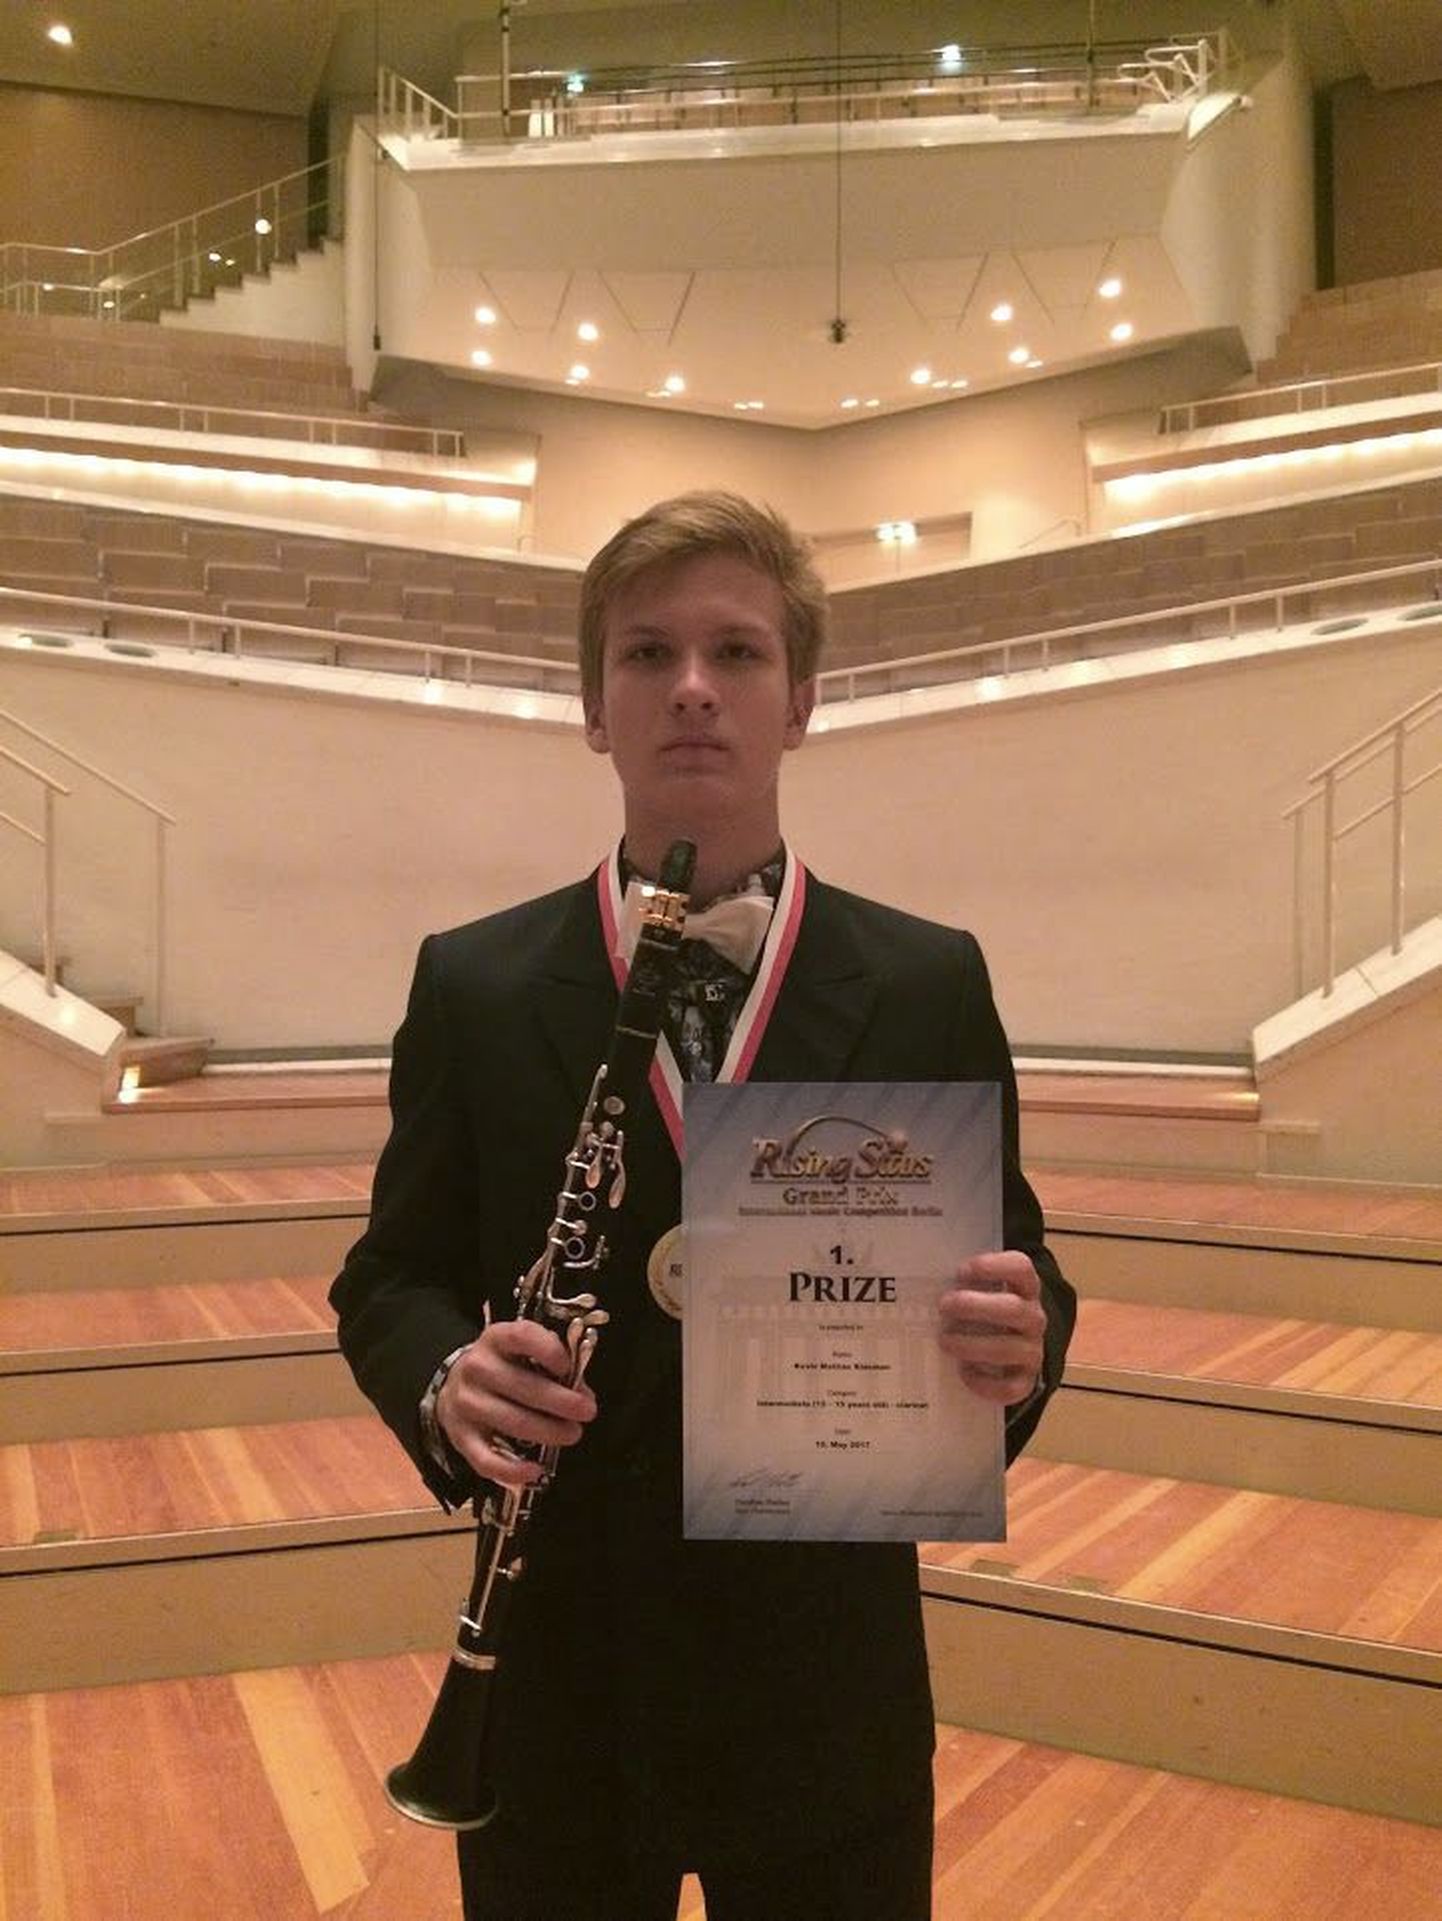 15-aastane Kevin Mattias Klasman saavutas Berliinis toimunud konkursil esikoha ning kutsuti lõppkontserdile Berliini Filharmoonia kammersaali.